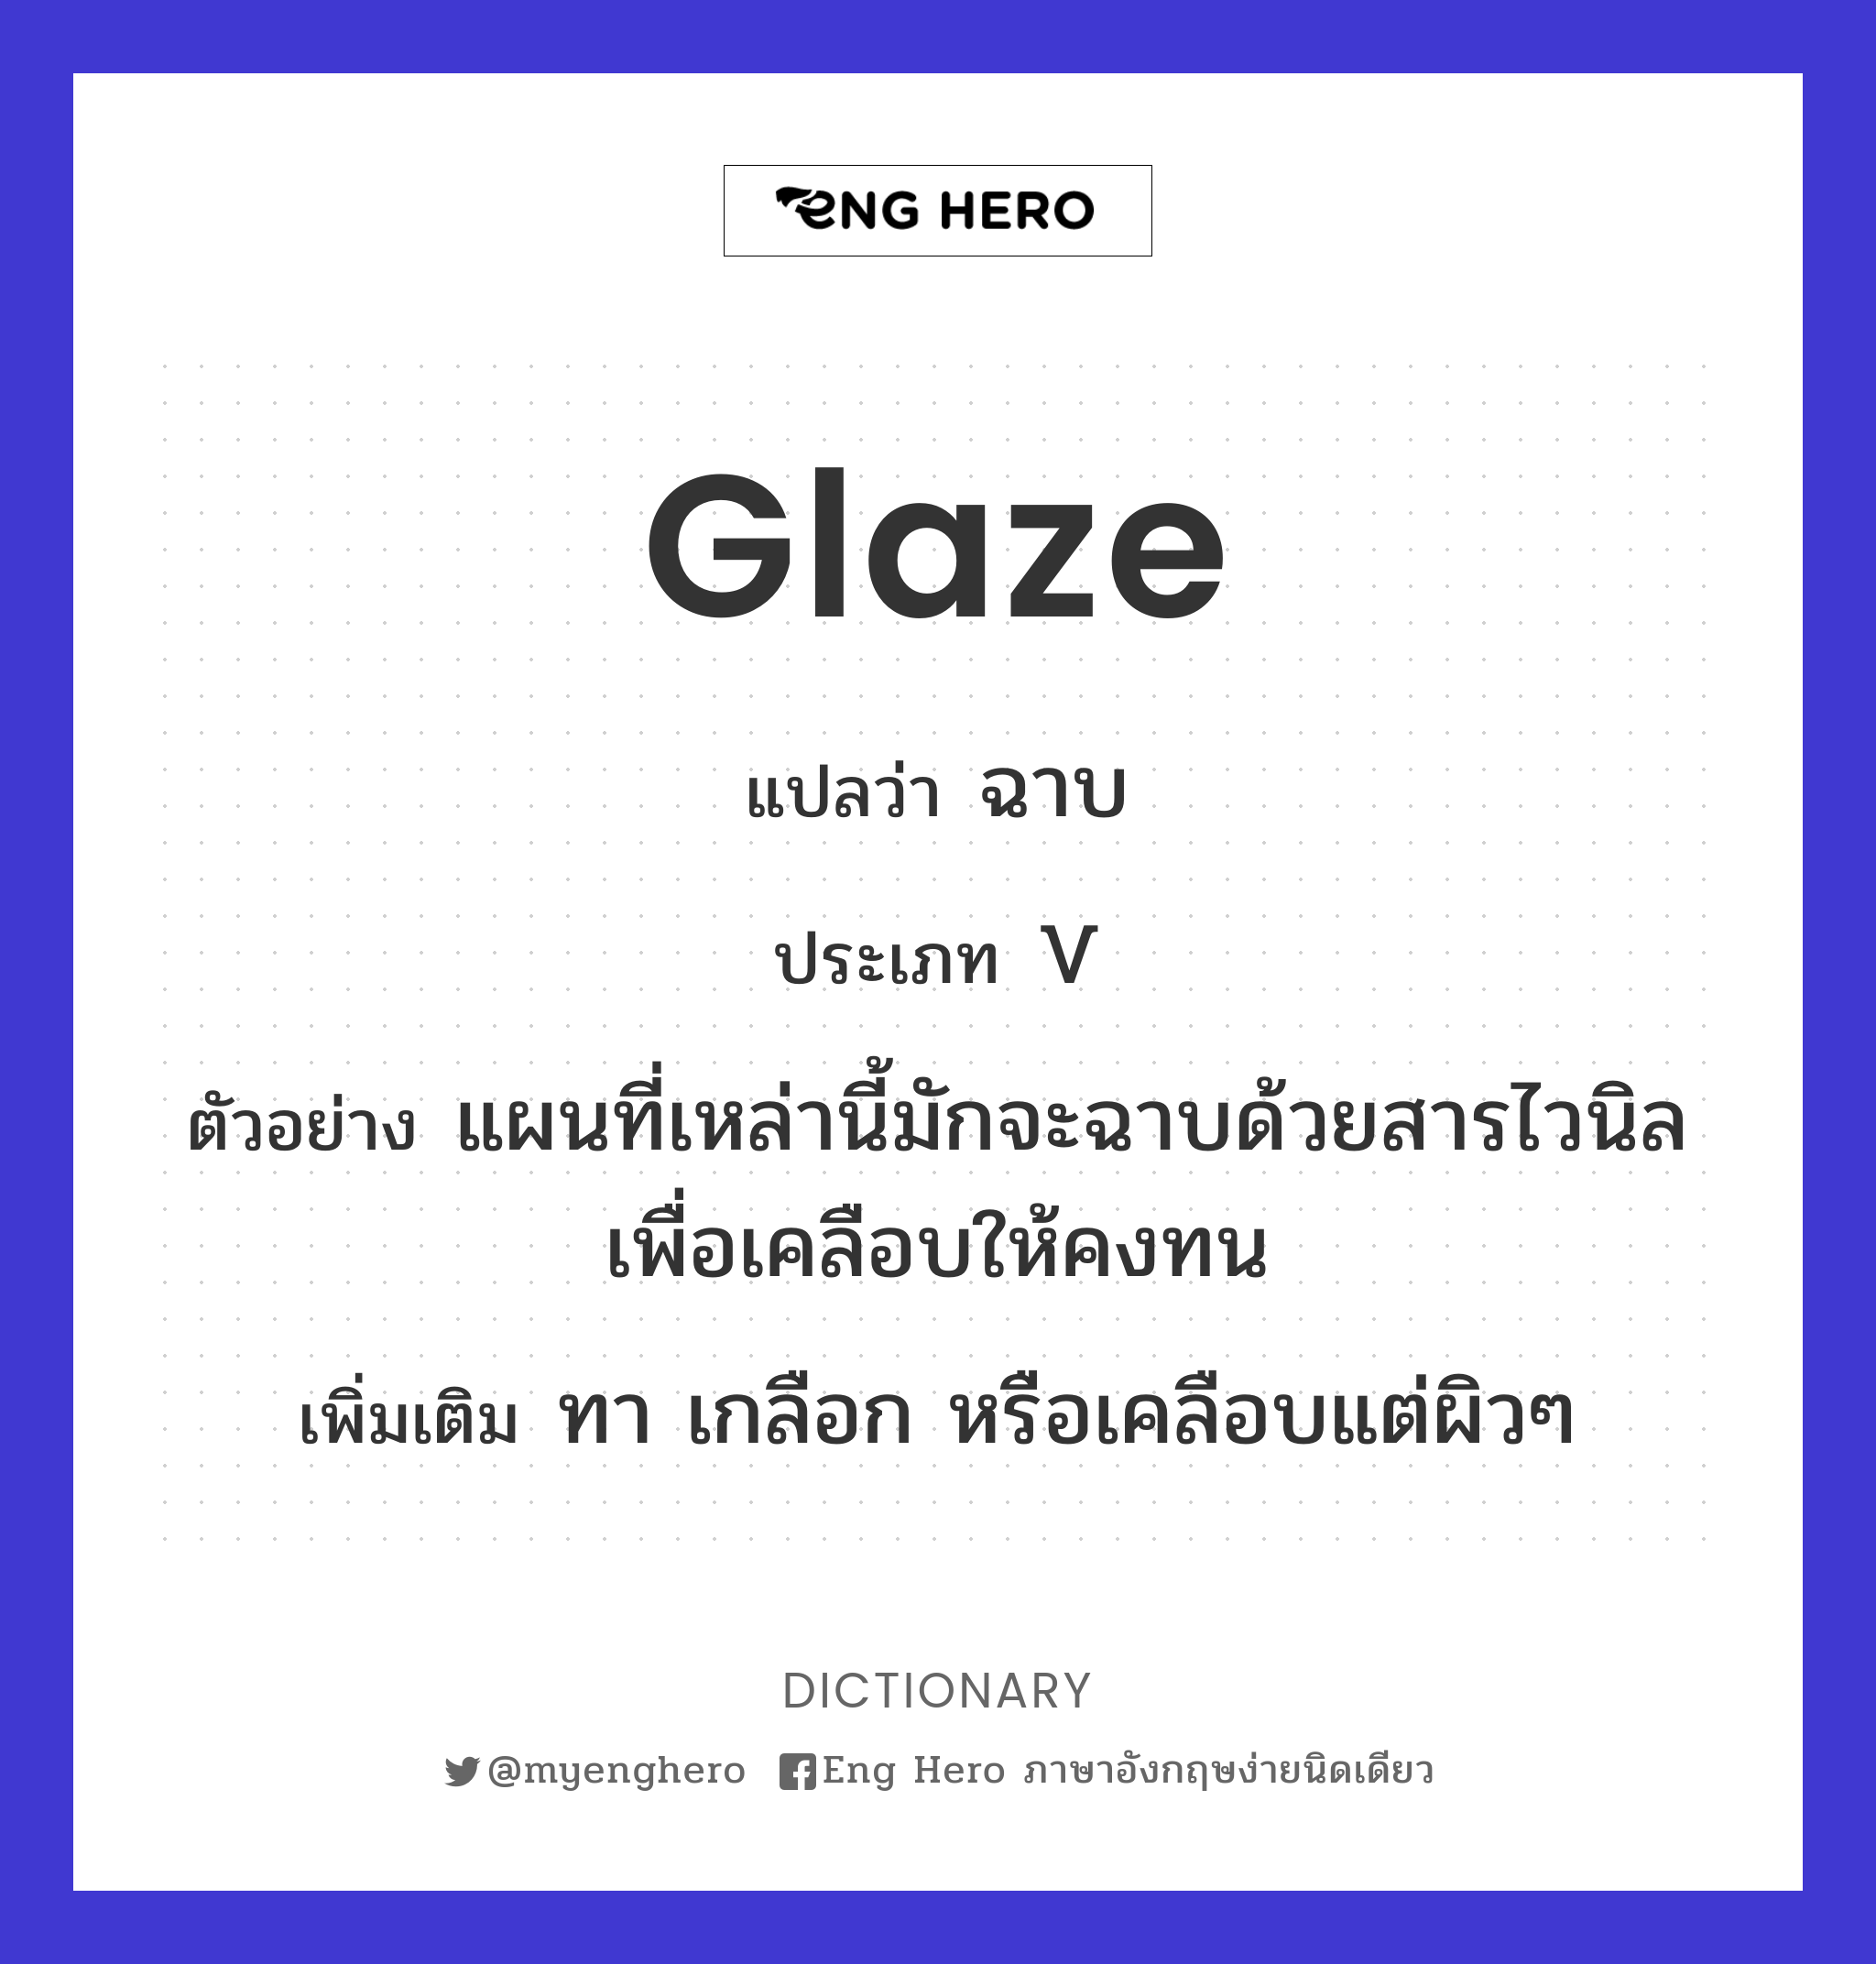 glaze